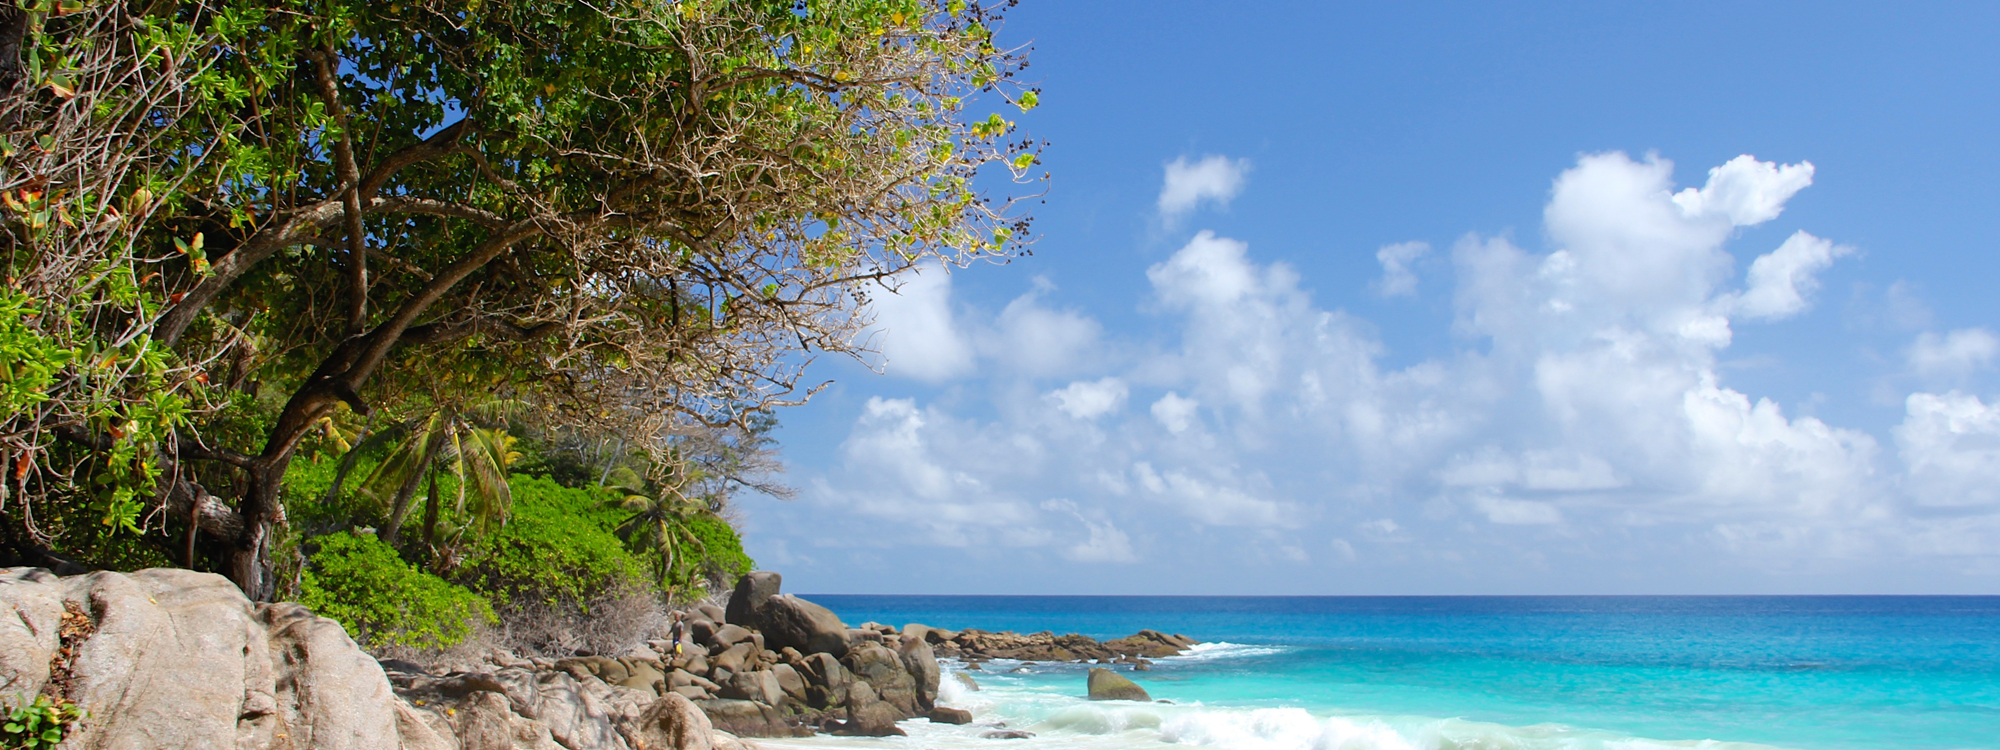 Seychellen, Berjaya Praslin Resort vom 2023-02-01 bis 2023-02-08 für 1179 EUR p.P.